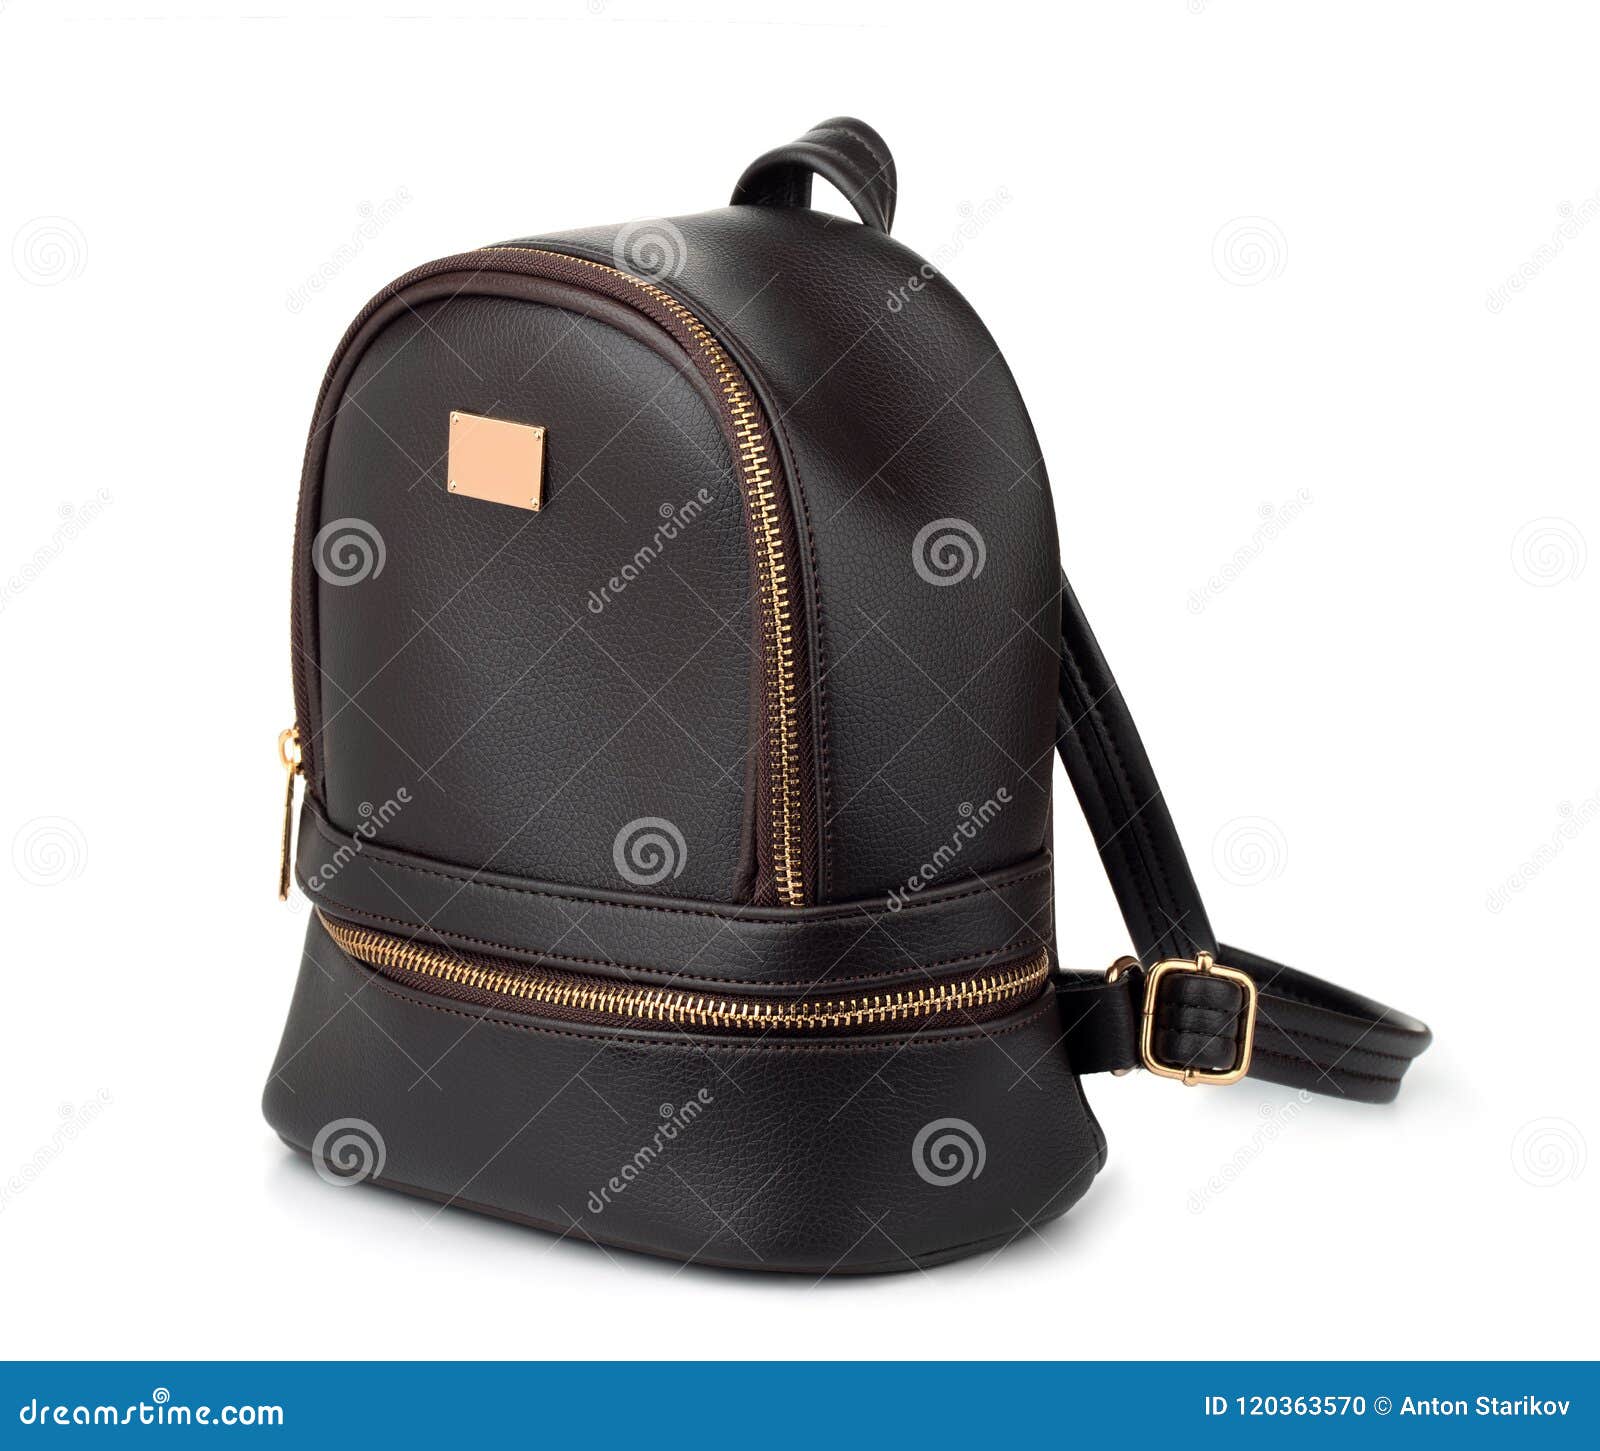 Black leather backpack stock photo. Image of black, fashionable - 120363570